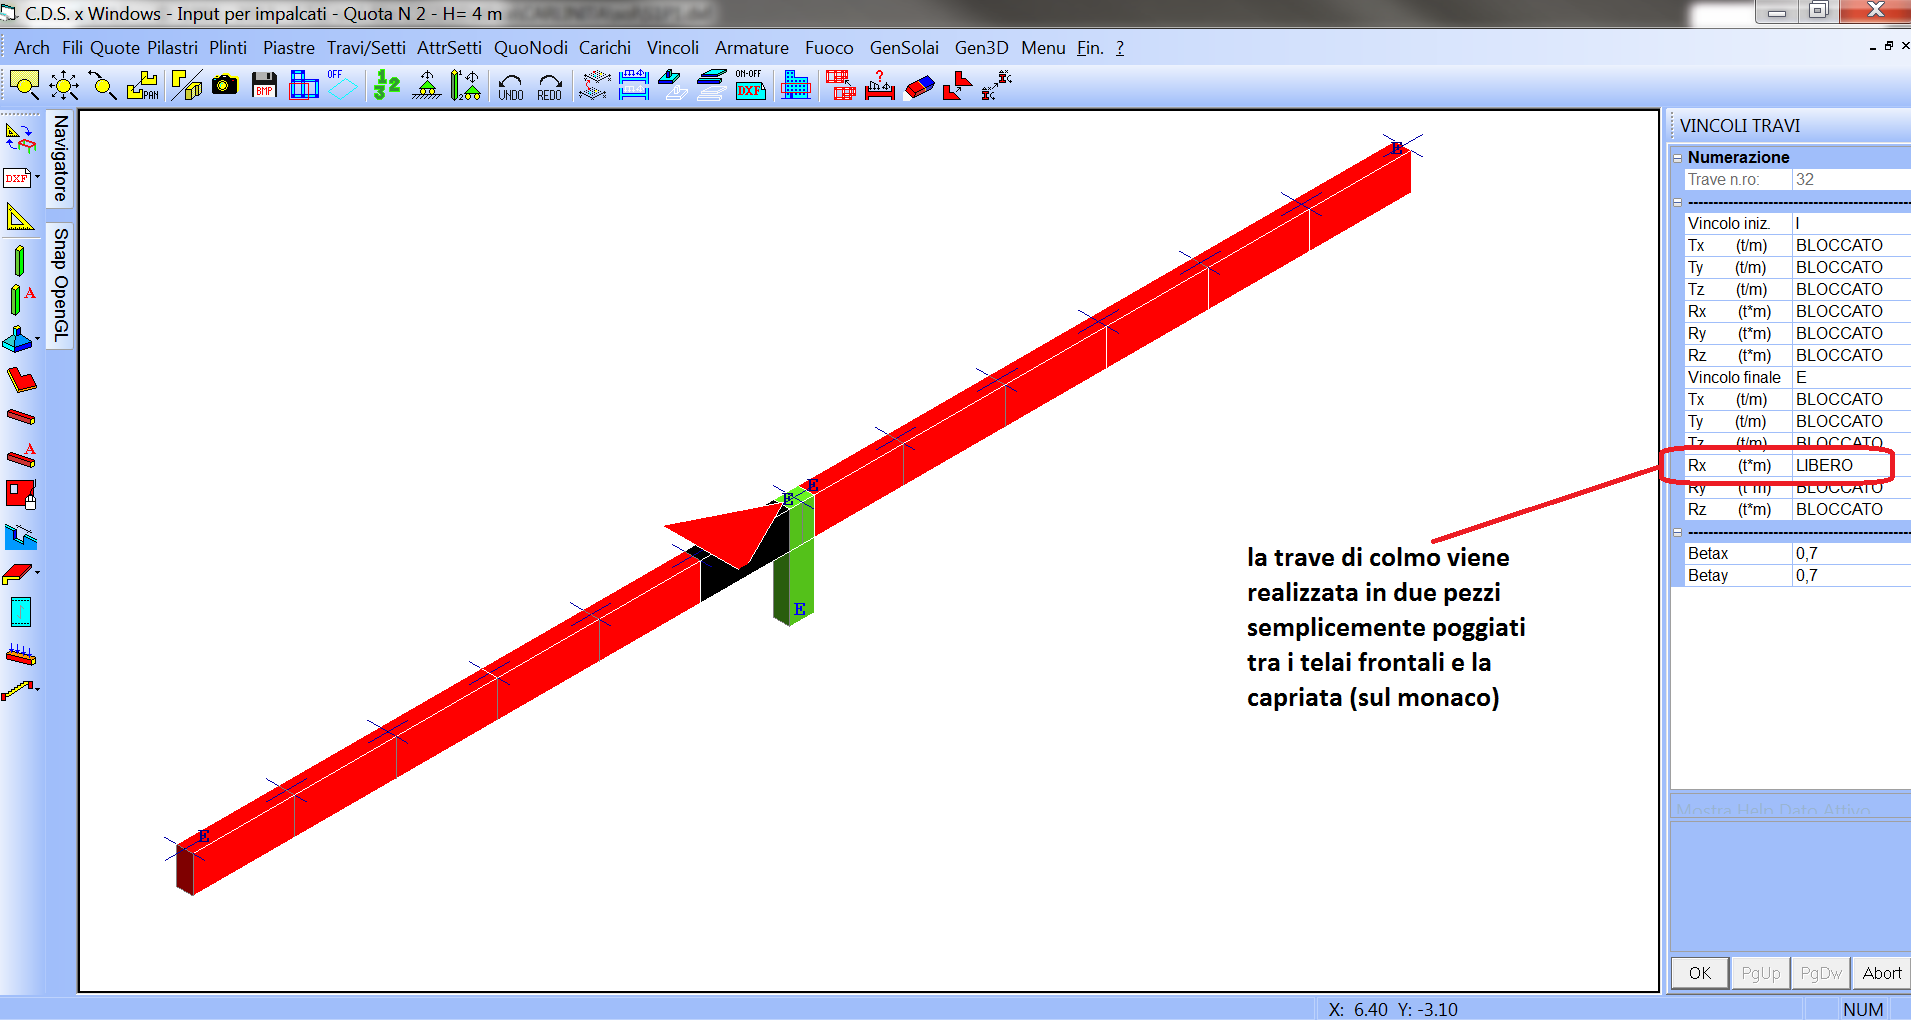 Capriata: trattandosi di struttura reticolare 2d si opta per delle semplici cerniere attorno all' asse x della sezione.